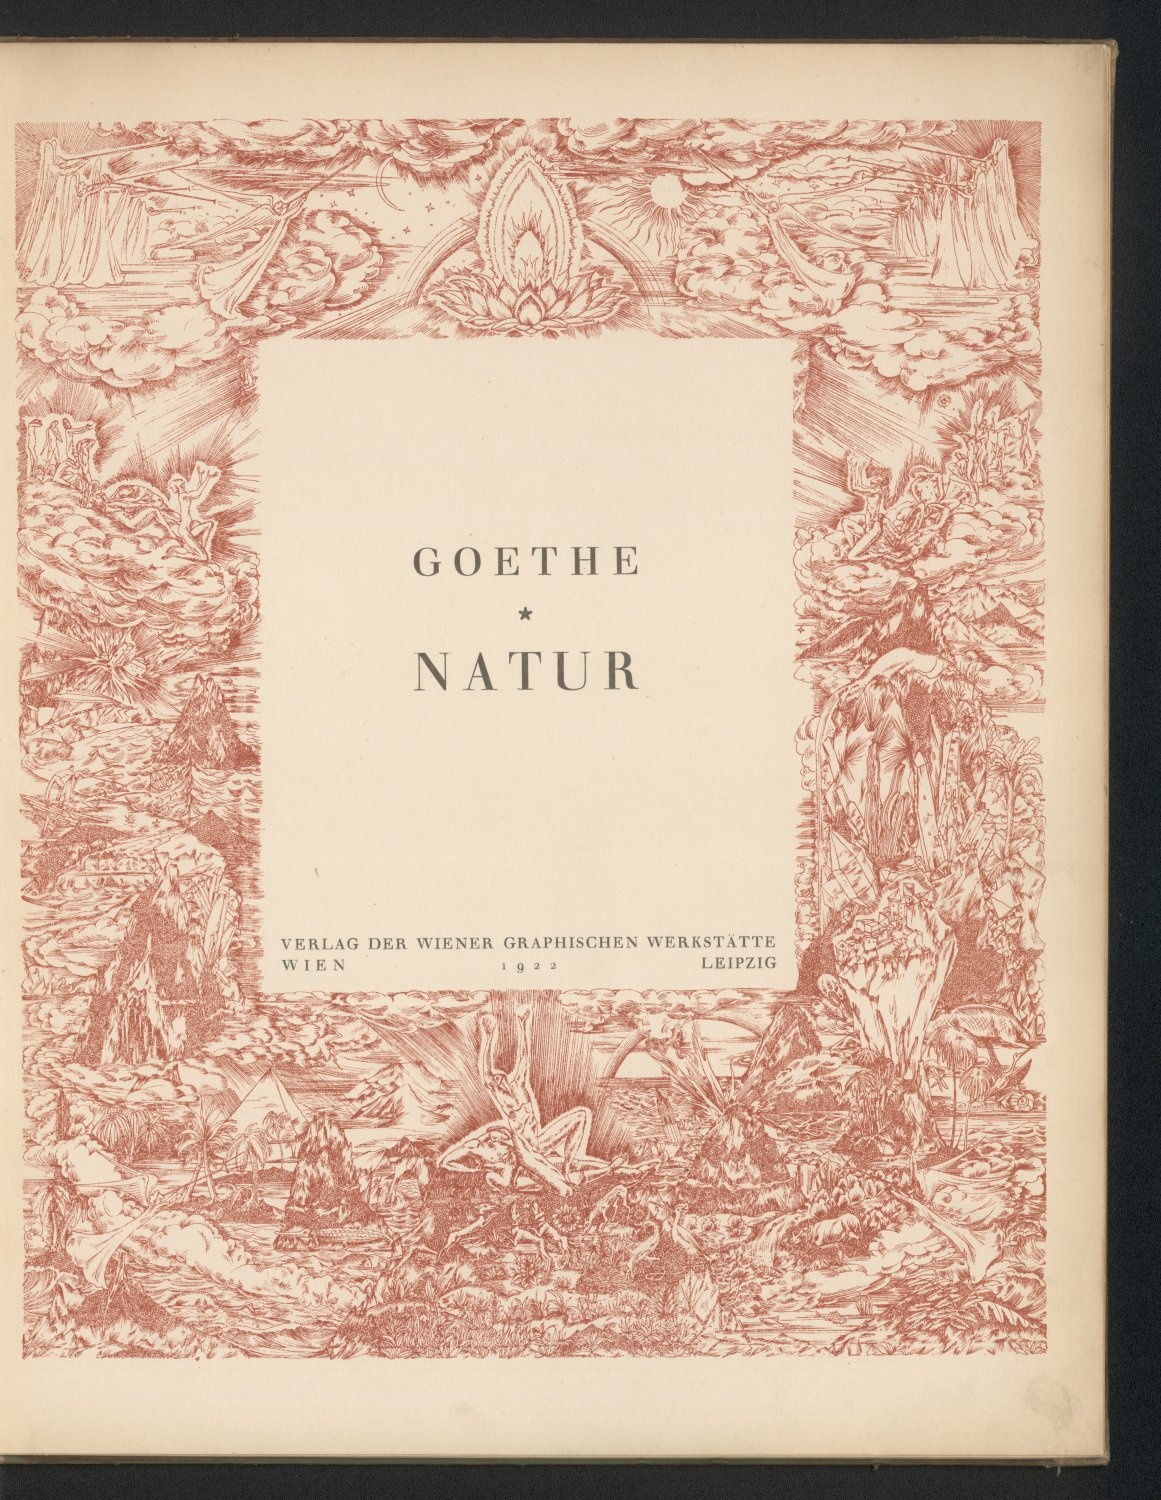 Titelblatt &quot;Goethe Natur&quot; (Trotz intensiver Recherche war der Rechteinhaber dieses Werkes nicht ermittelbar. Bei Hinweisen wenden Sie sich bitte an: bildarchiv@goethehaus-frankfurt.de Orphan Work)